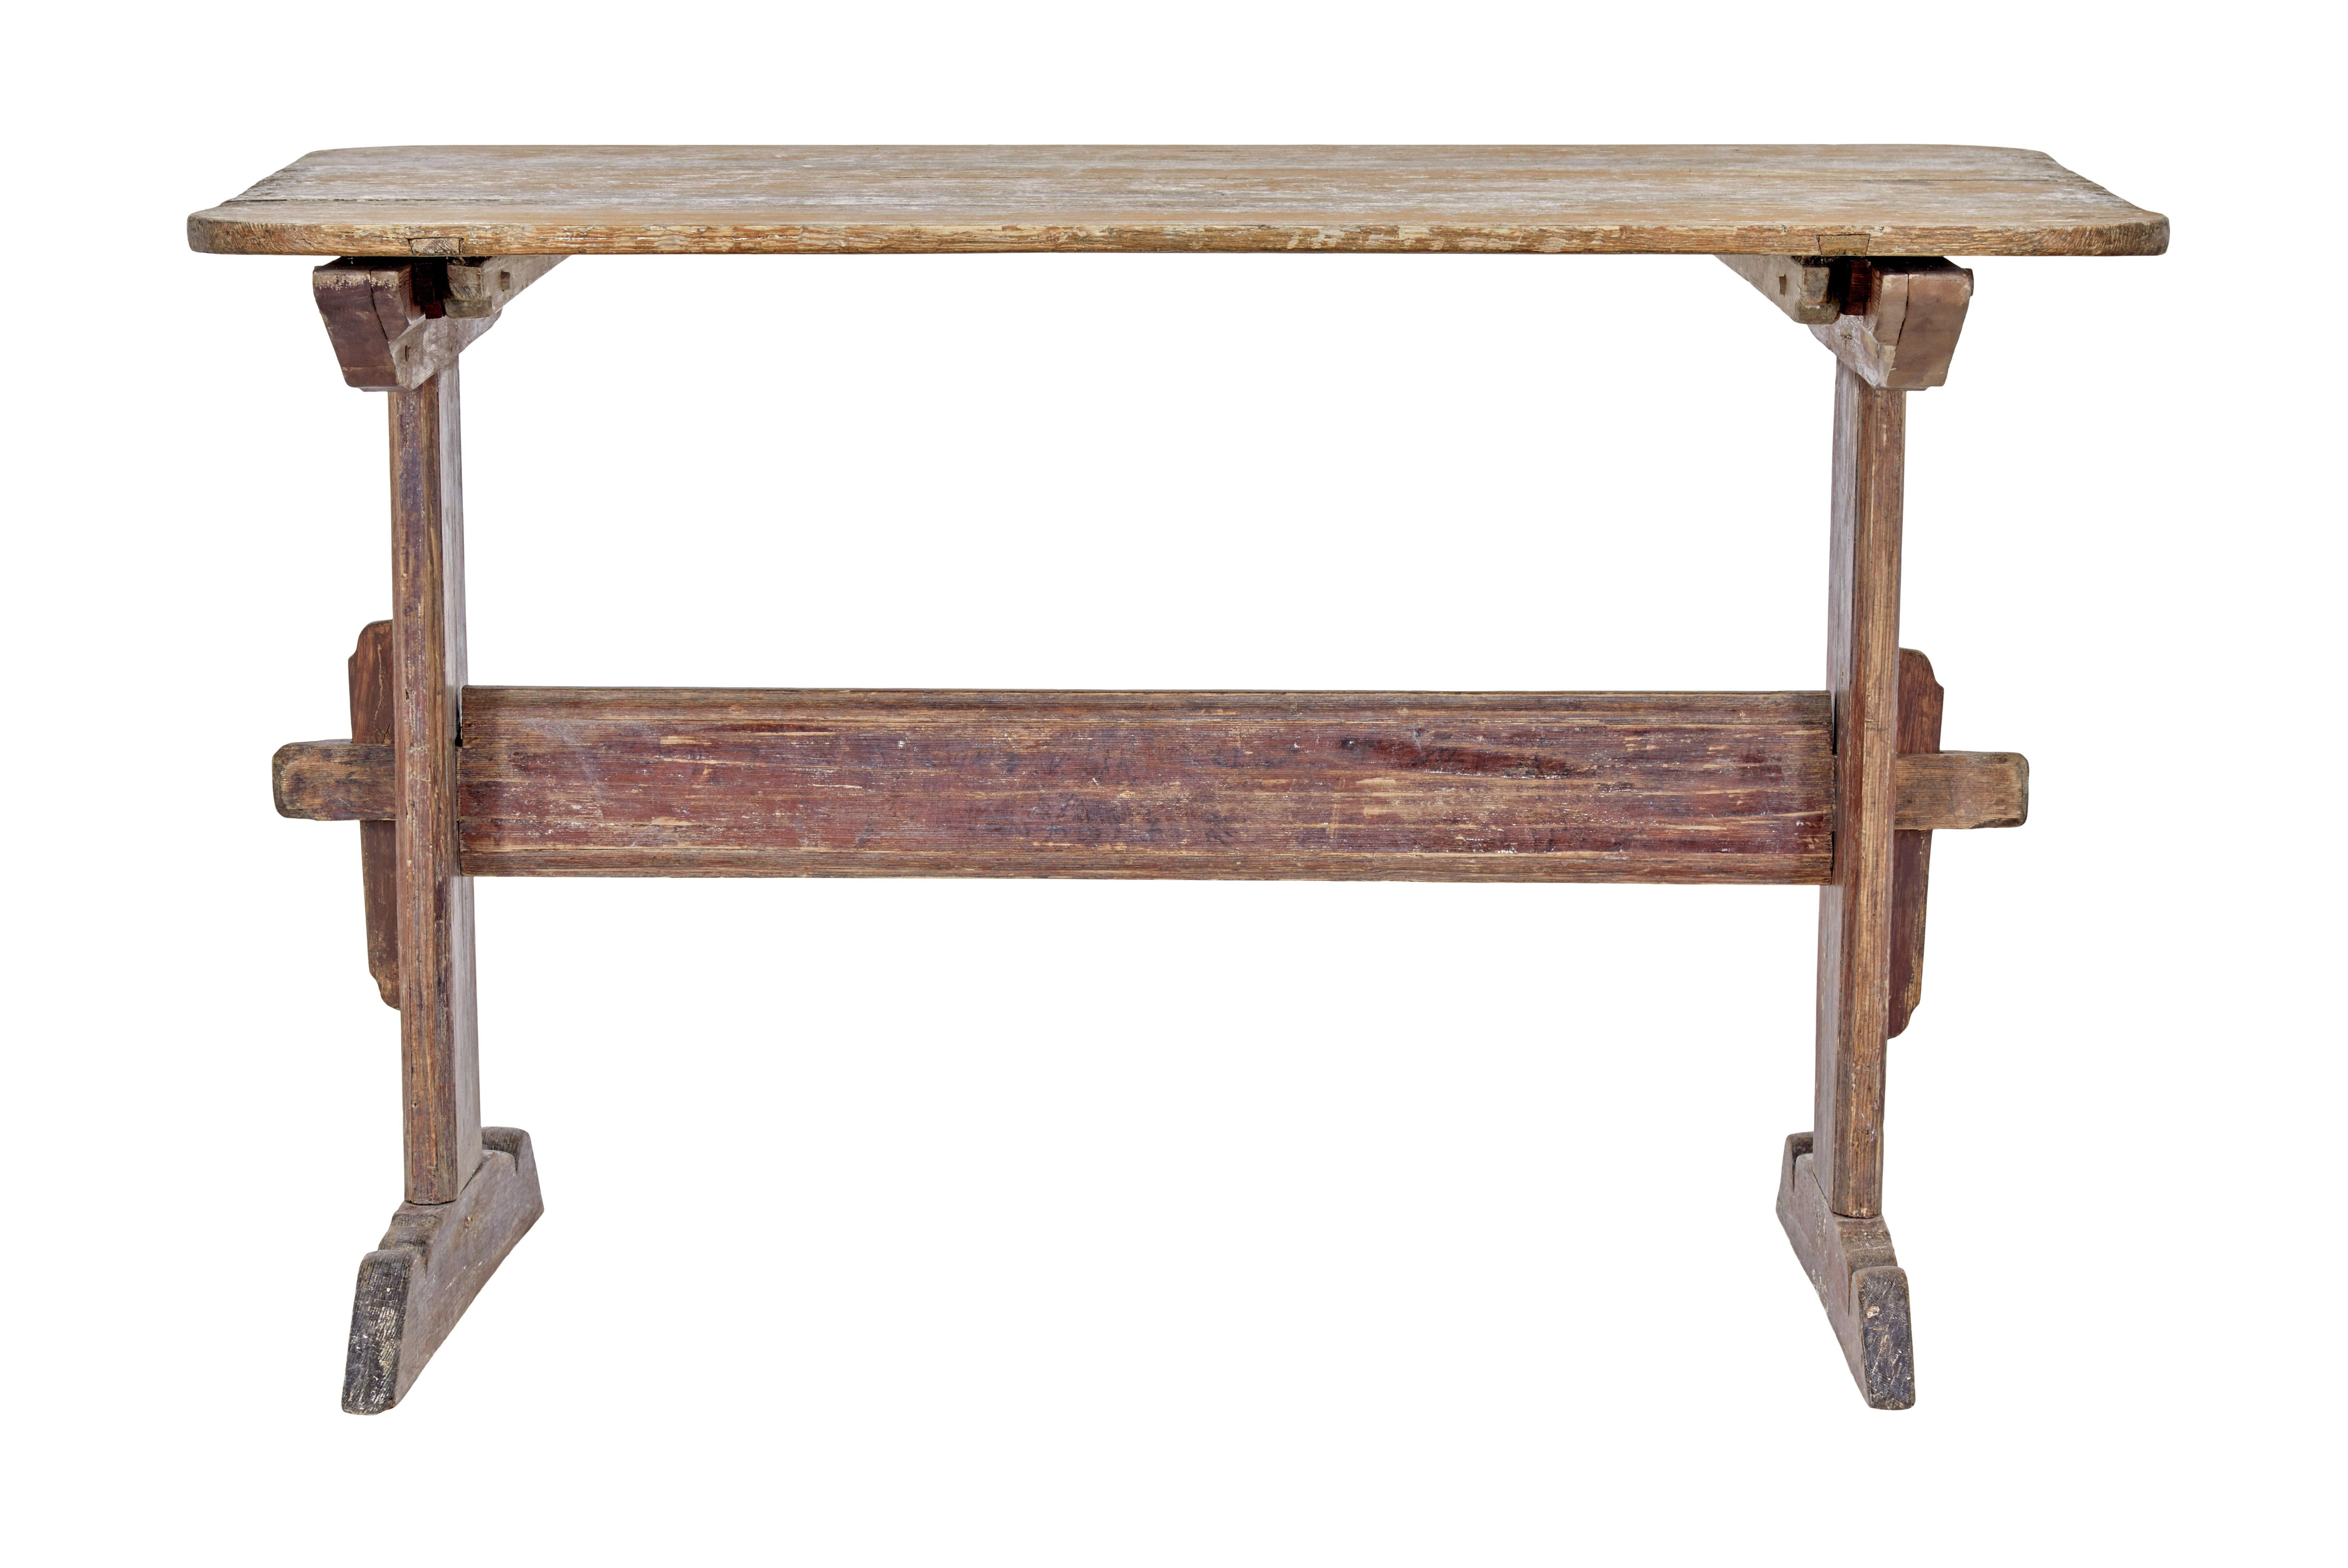 Table à tréteaux rustique suédoise du 19e siècle, peinte, vers 1840.

Nous avons ici une table suédoise traditionnelle avec des traces de la peinture d'origine.

Dessus peint en orange clair, indiquant qu'il a pu être utilisé pour la cuisson,